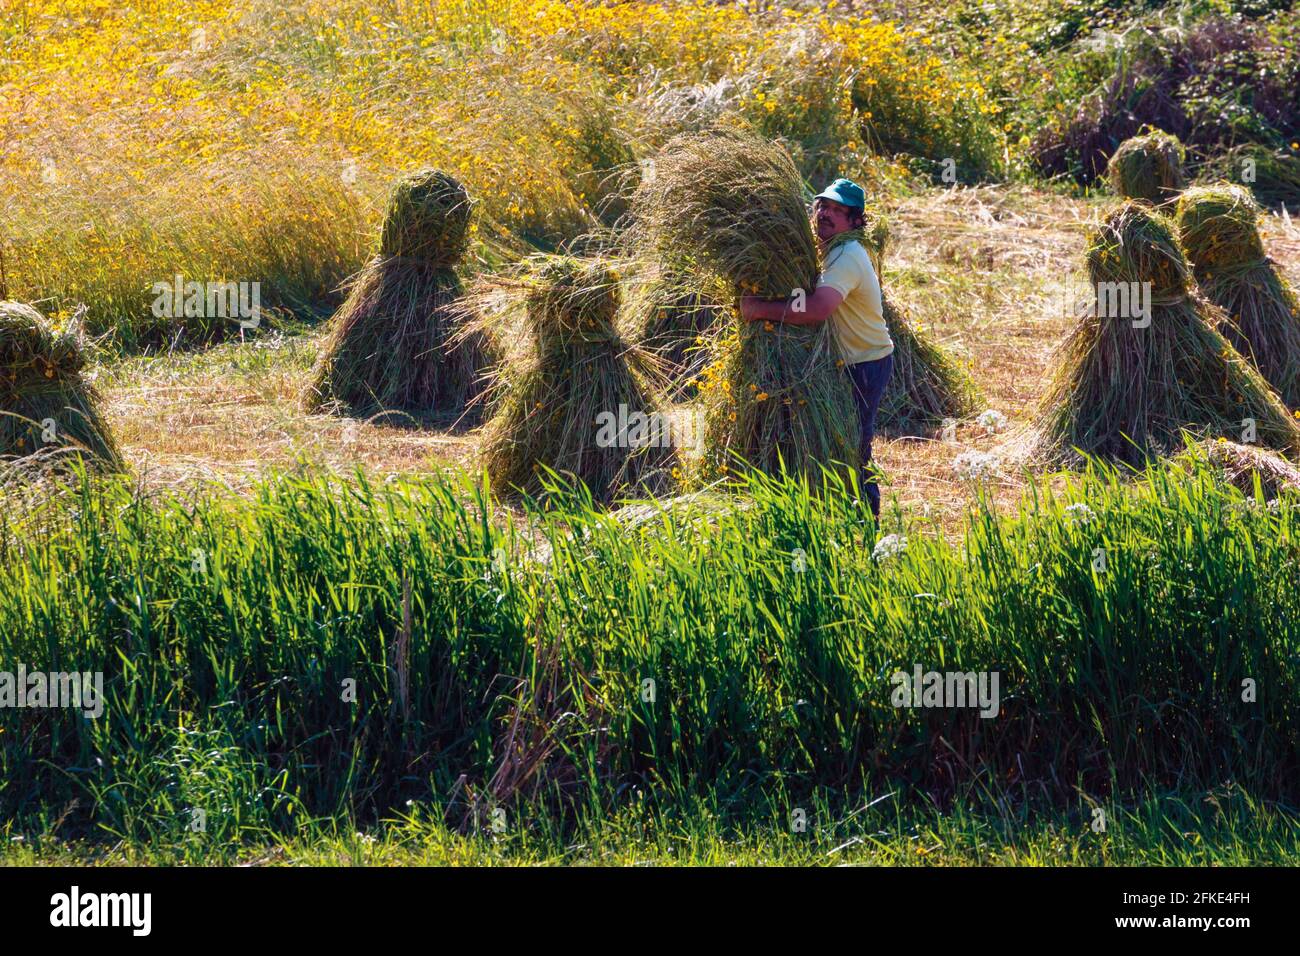 Ouvrier agricole regroupant le foin près d'Estarreja, district d'Aveiro, Portugal. Banque D'Images